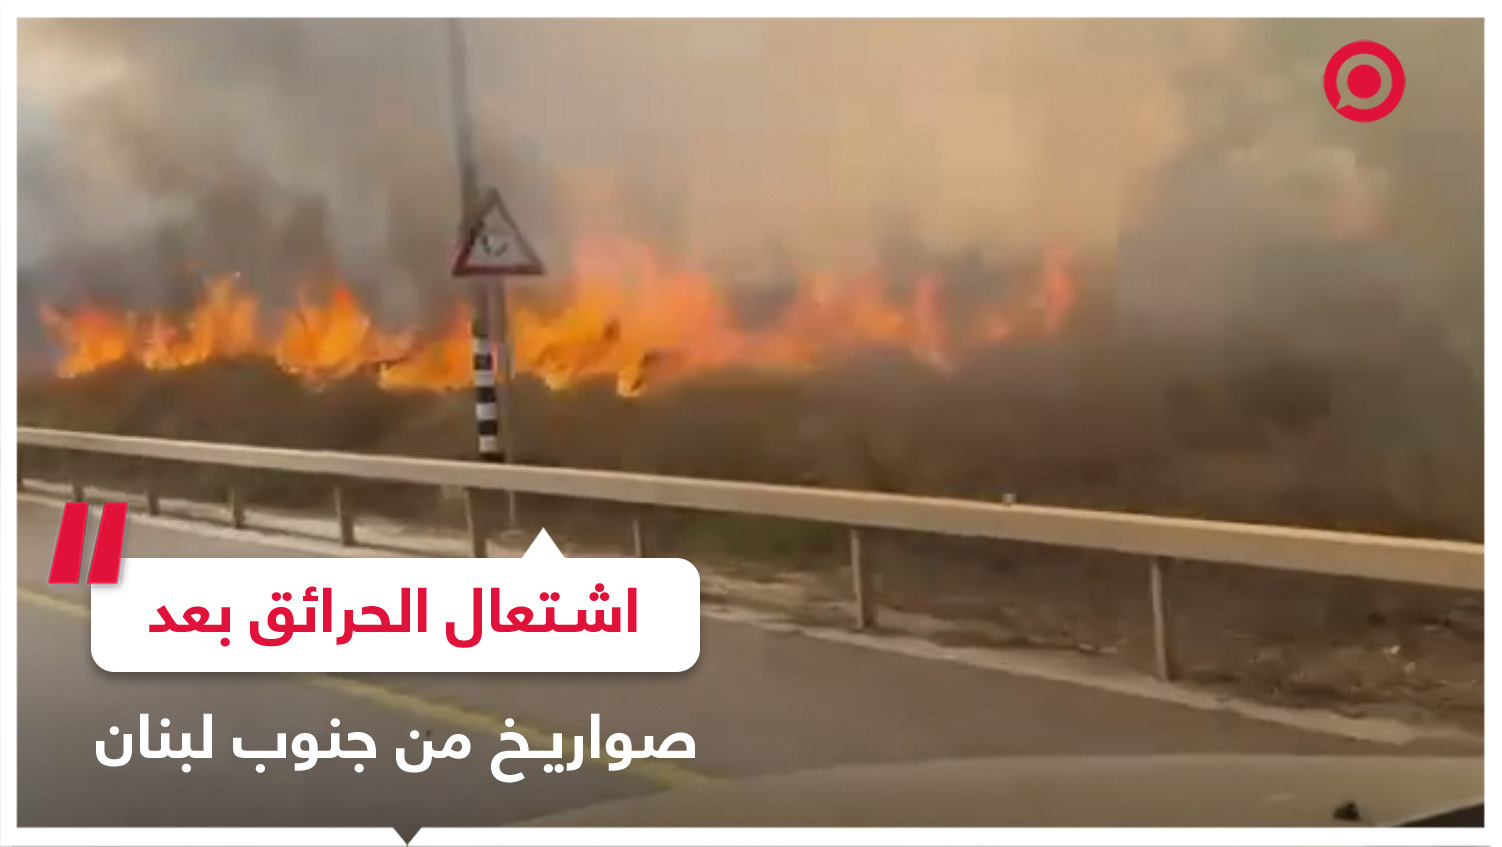 اندلاع النيران بين مستوطنتي كريات شمونة وبيت هيلل عقب سقوط 5 صواريخ